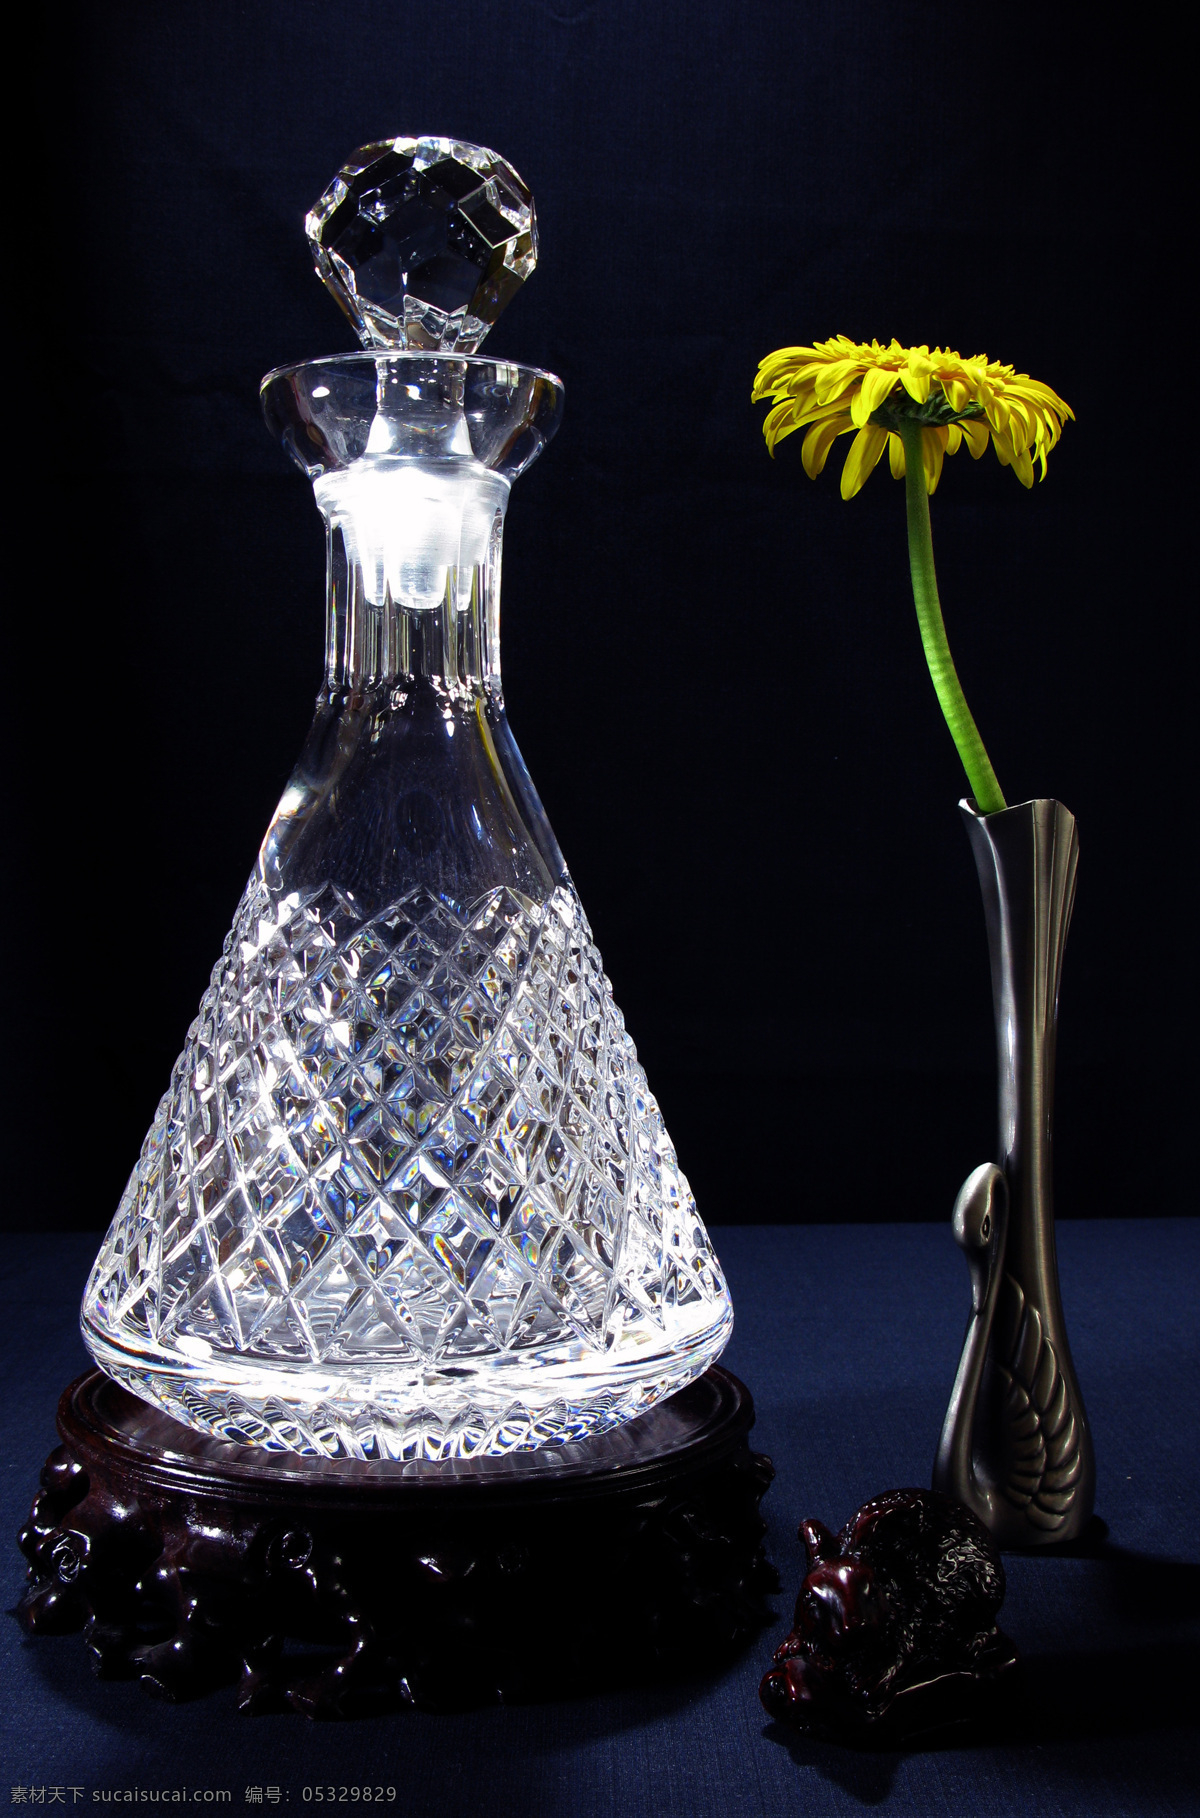 红葡萄酒 水晶 瓶 英国水晶器皿 水晶造型 雕花图案 手工切割 水晶瓶 收藏 鉴赏 文化艺术 传统文化 摄影图库